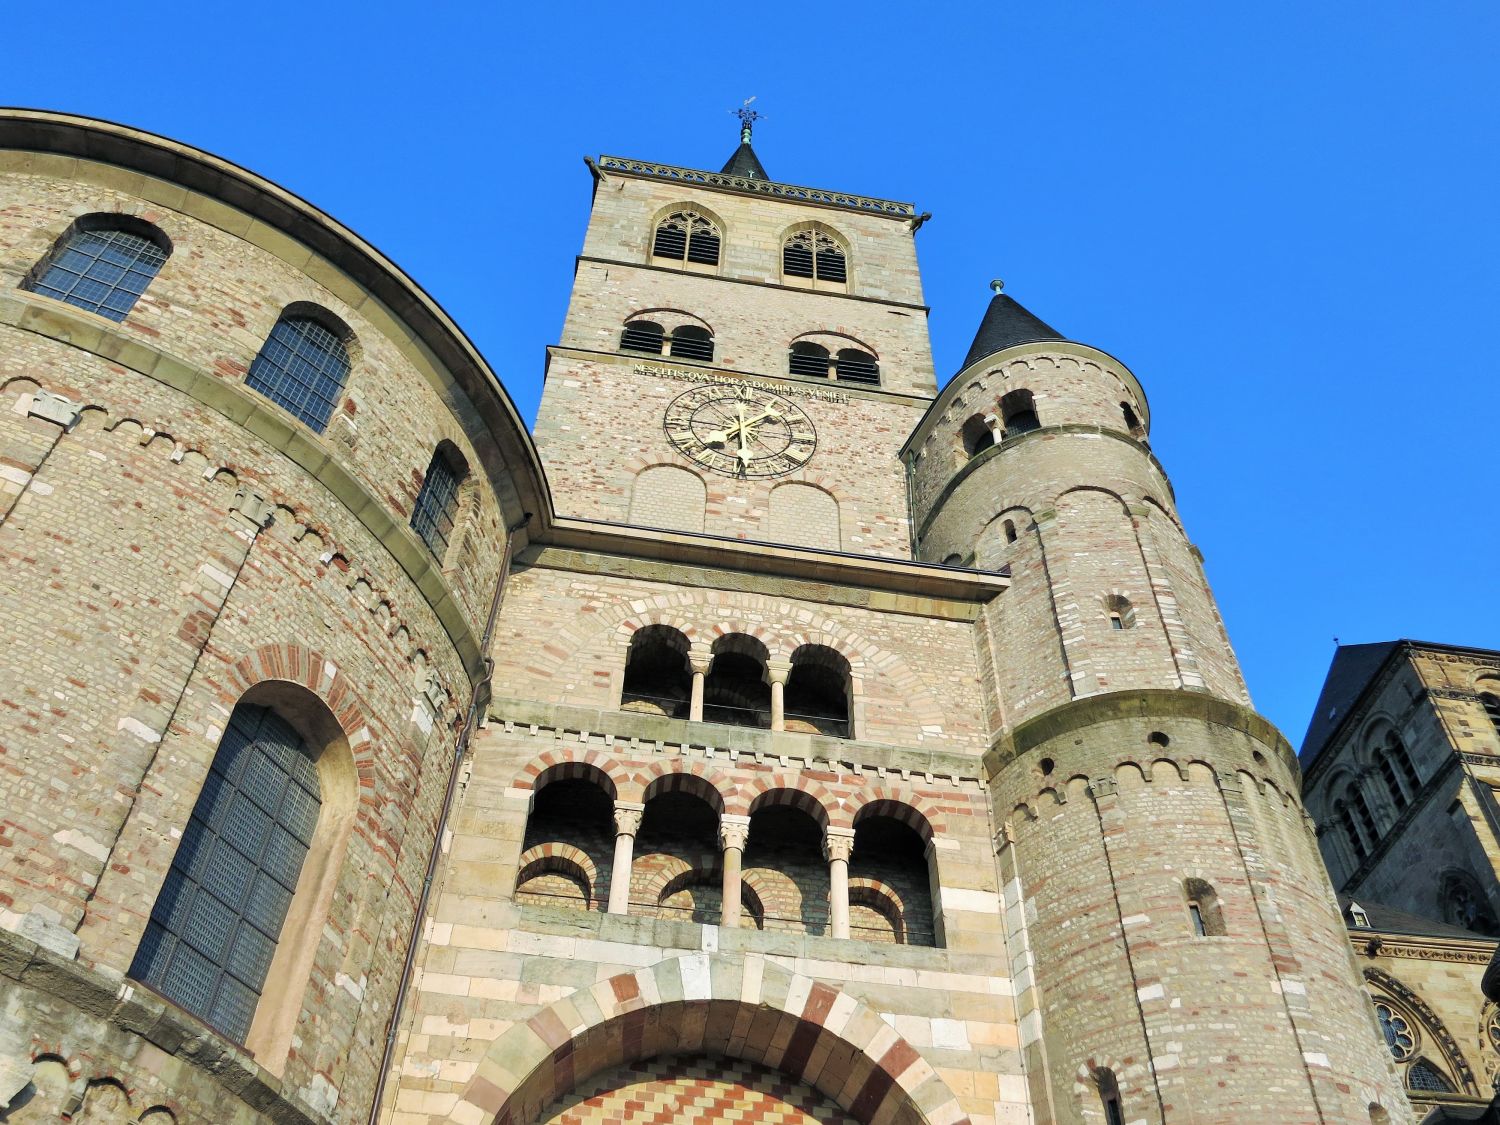 Dom im historischen Zentrum von Trier
https://pixabay.com/photos/trier-city-dom-historic-center-840702